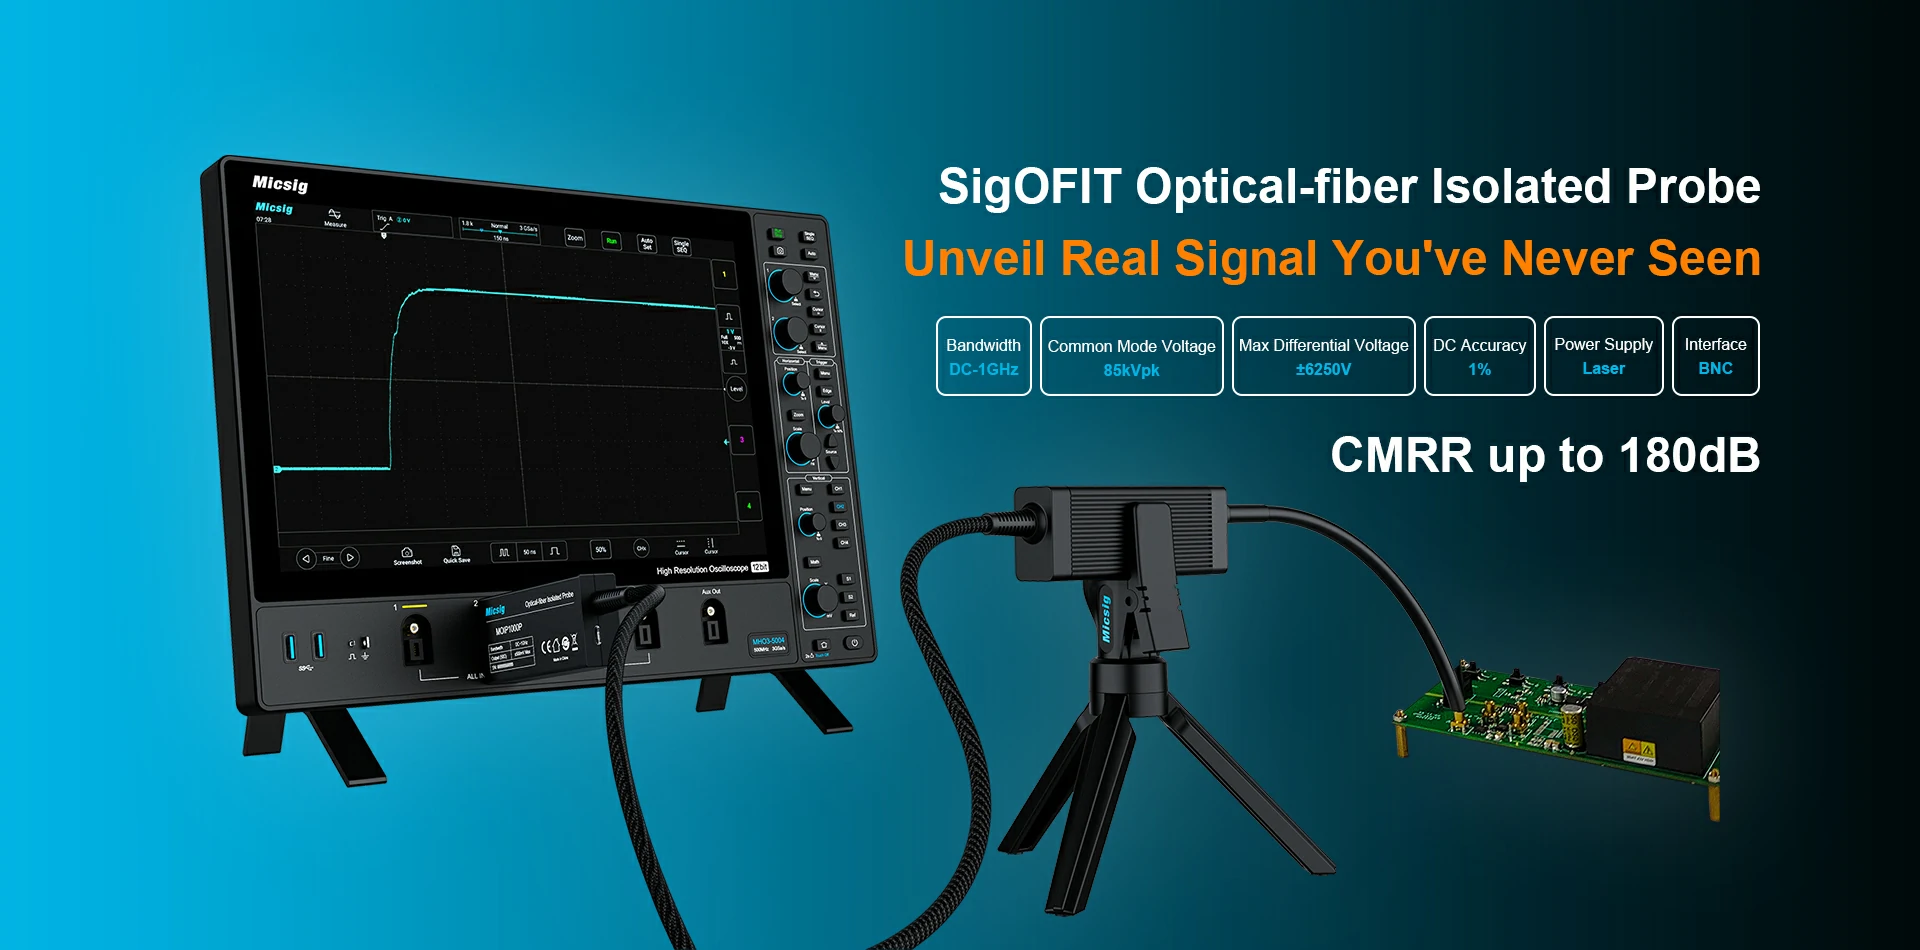 SigOFIT Optical-fiber Isolated Probe